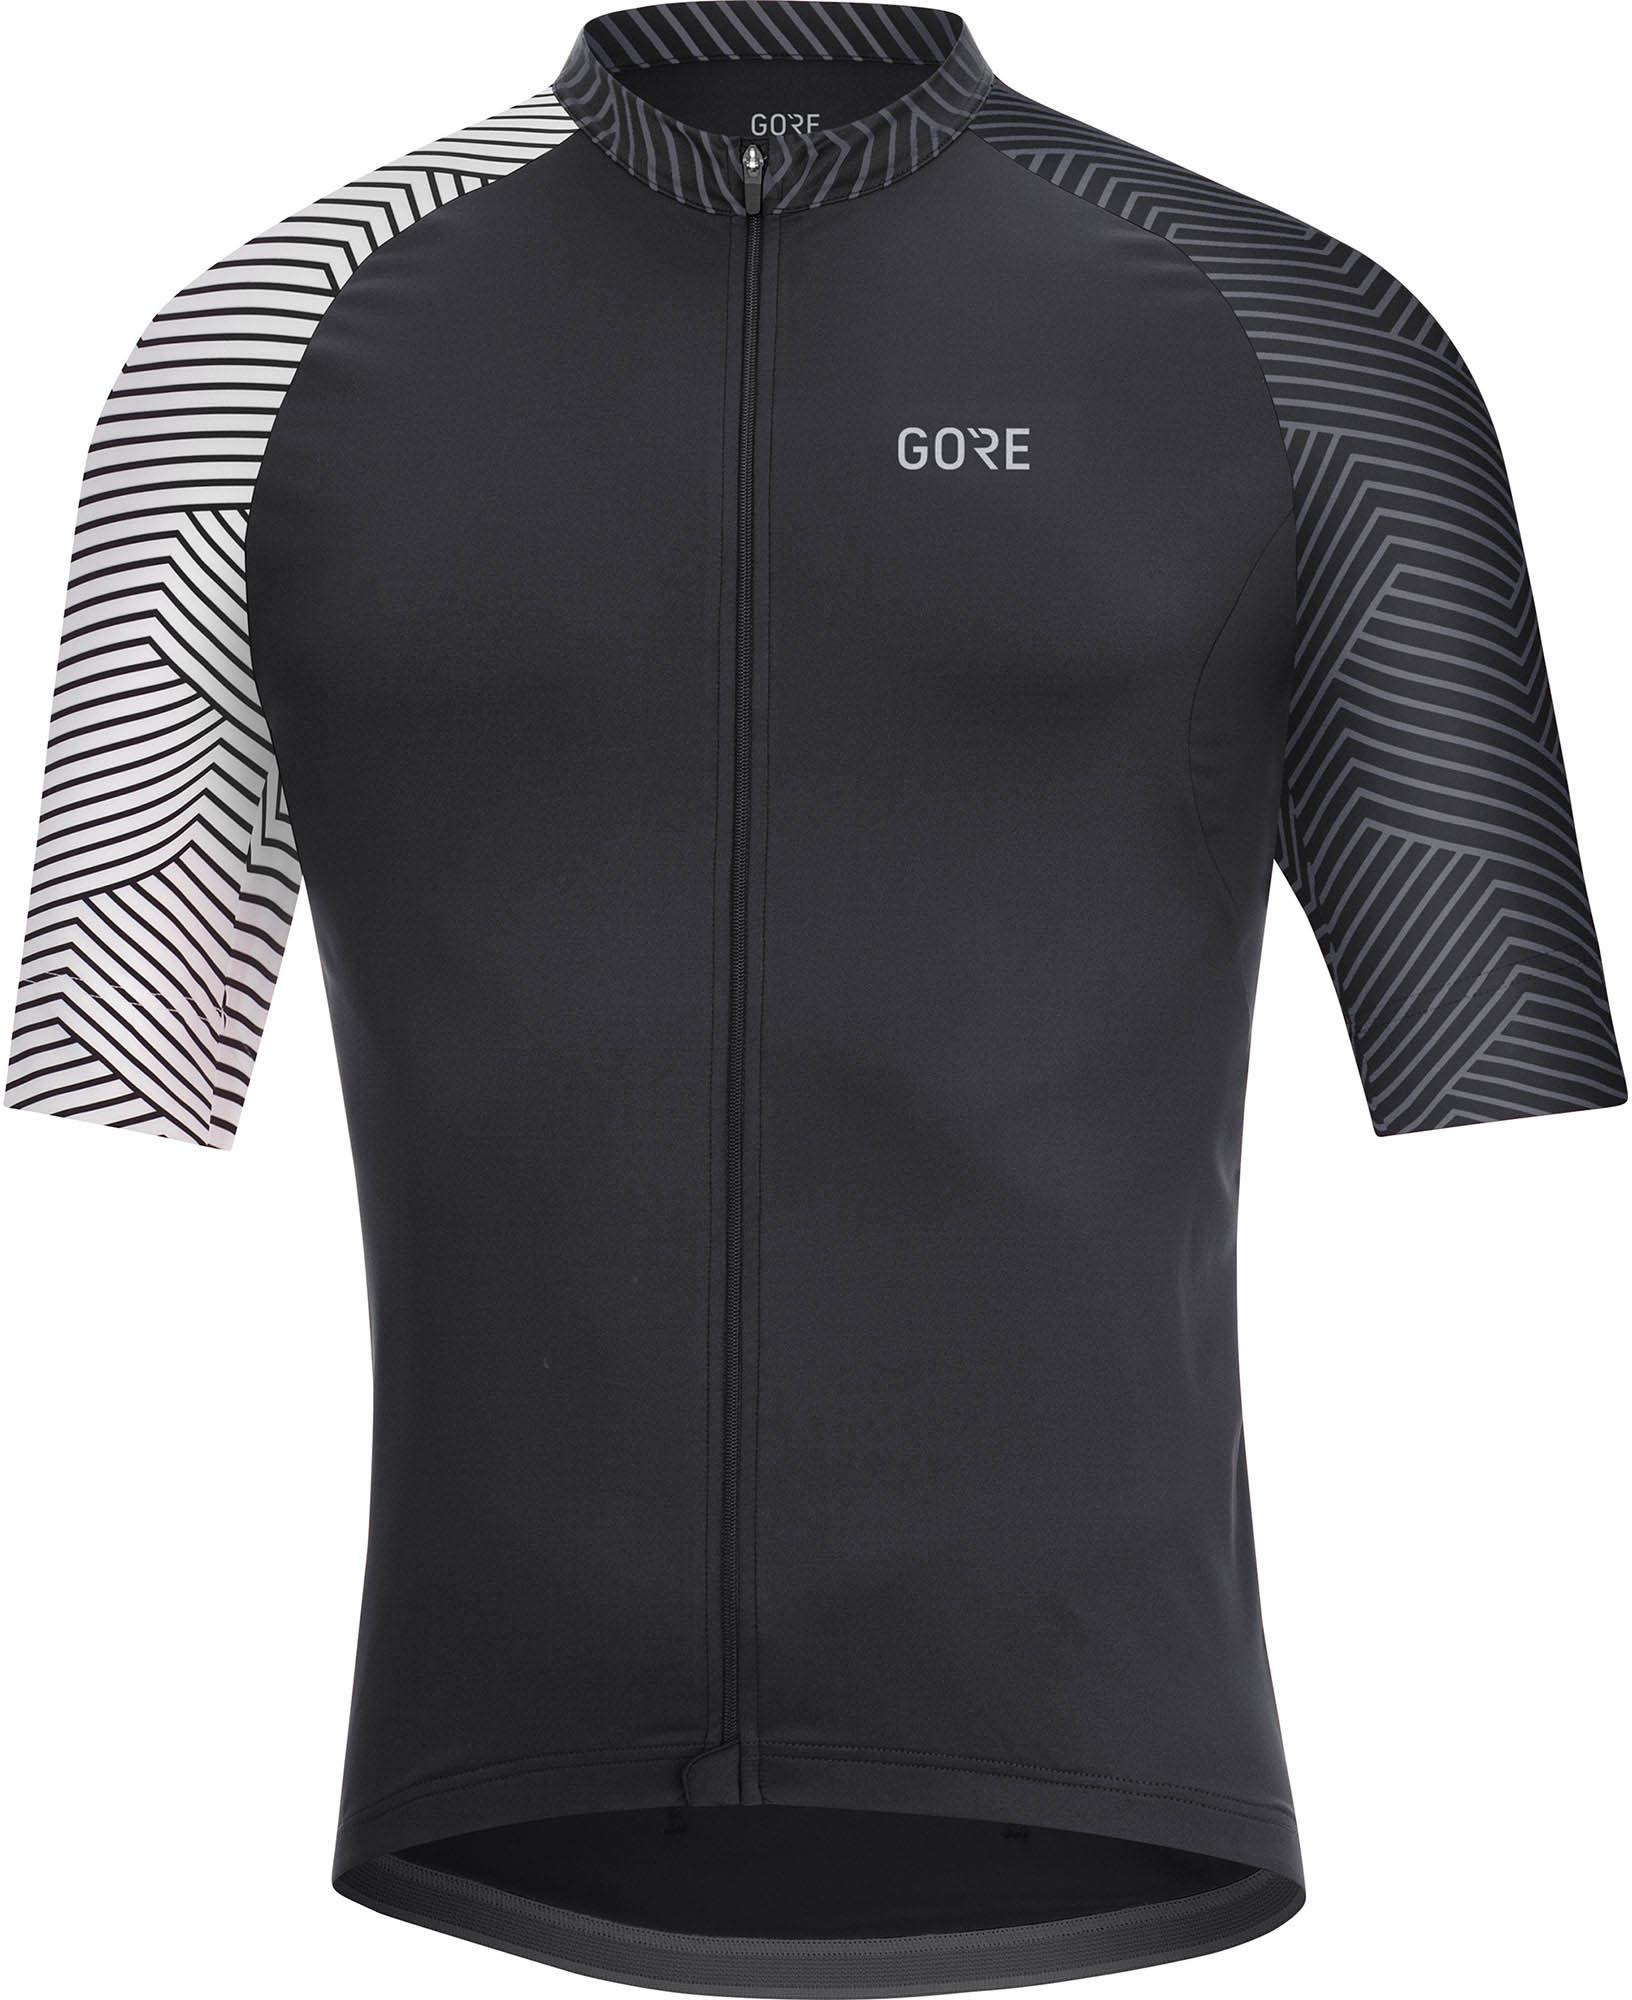 Gorewear C5 Jersey  Black/white